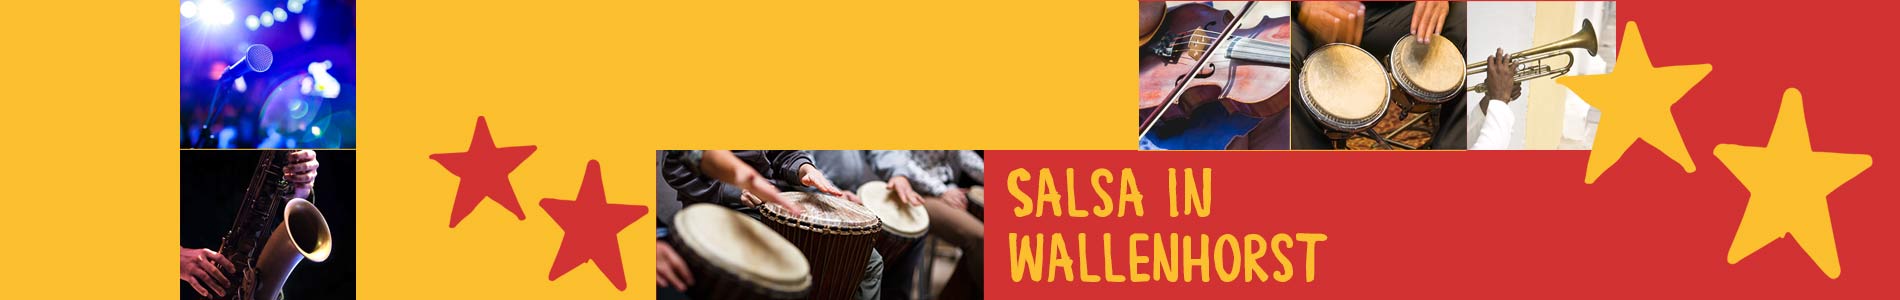 Salsa in Wallenhorst – Salsa lernen und tanzen, Tanzkurse, Partys, Veranstaltungen